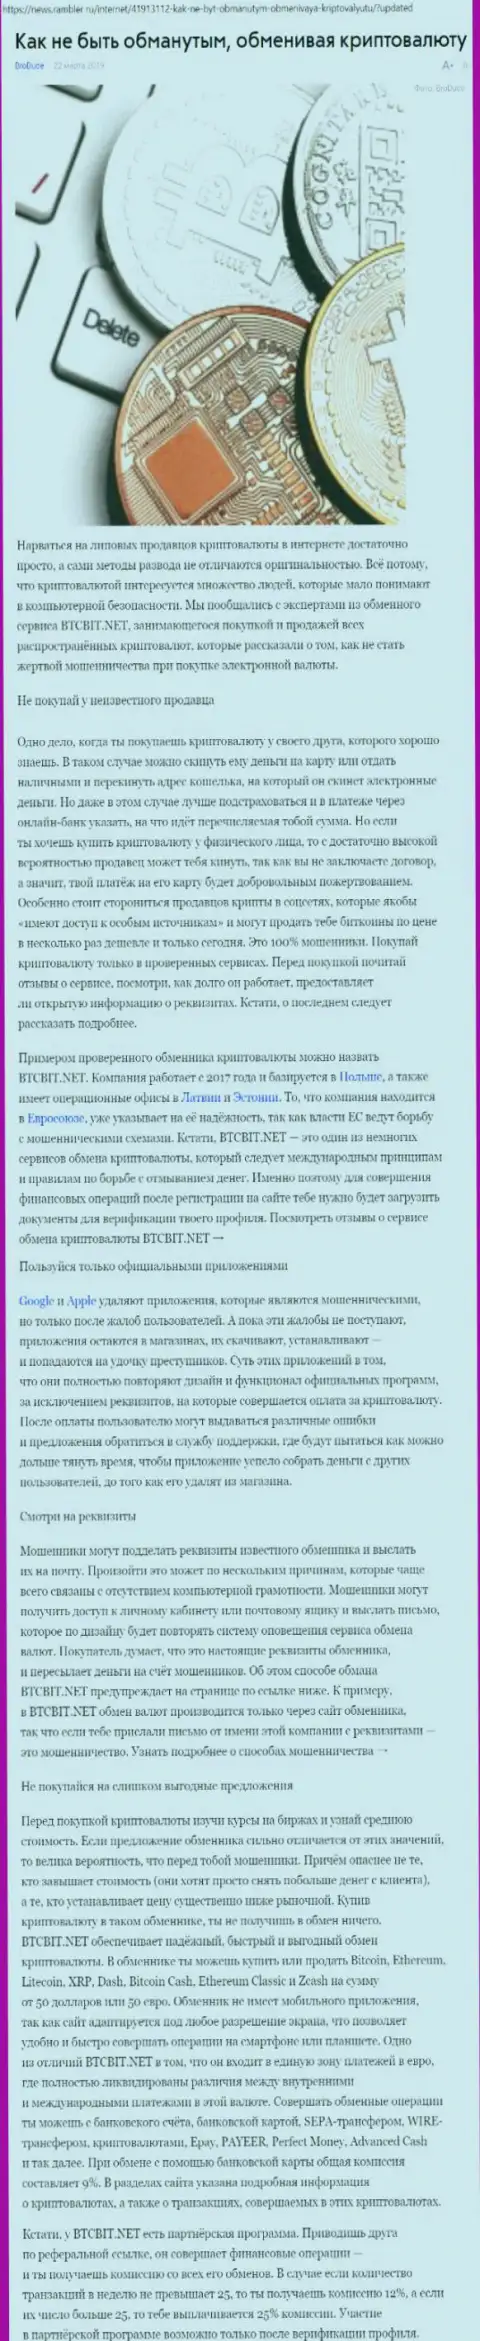 Статья об обменном пункте БТЦБИТ на News Rambler Ru